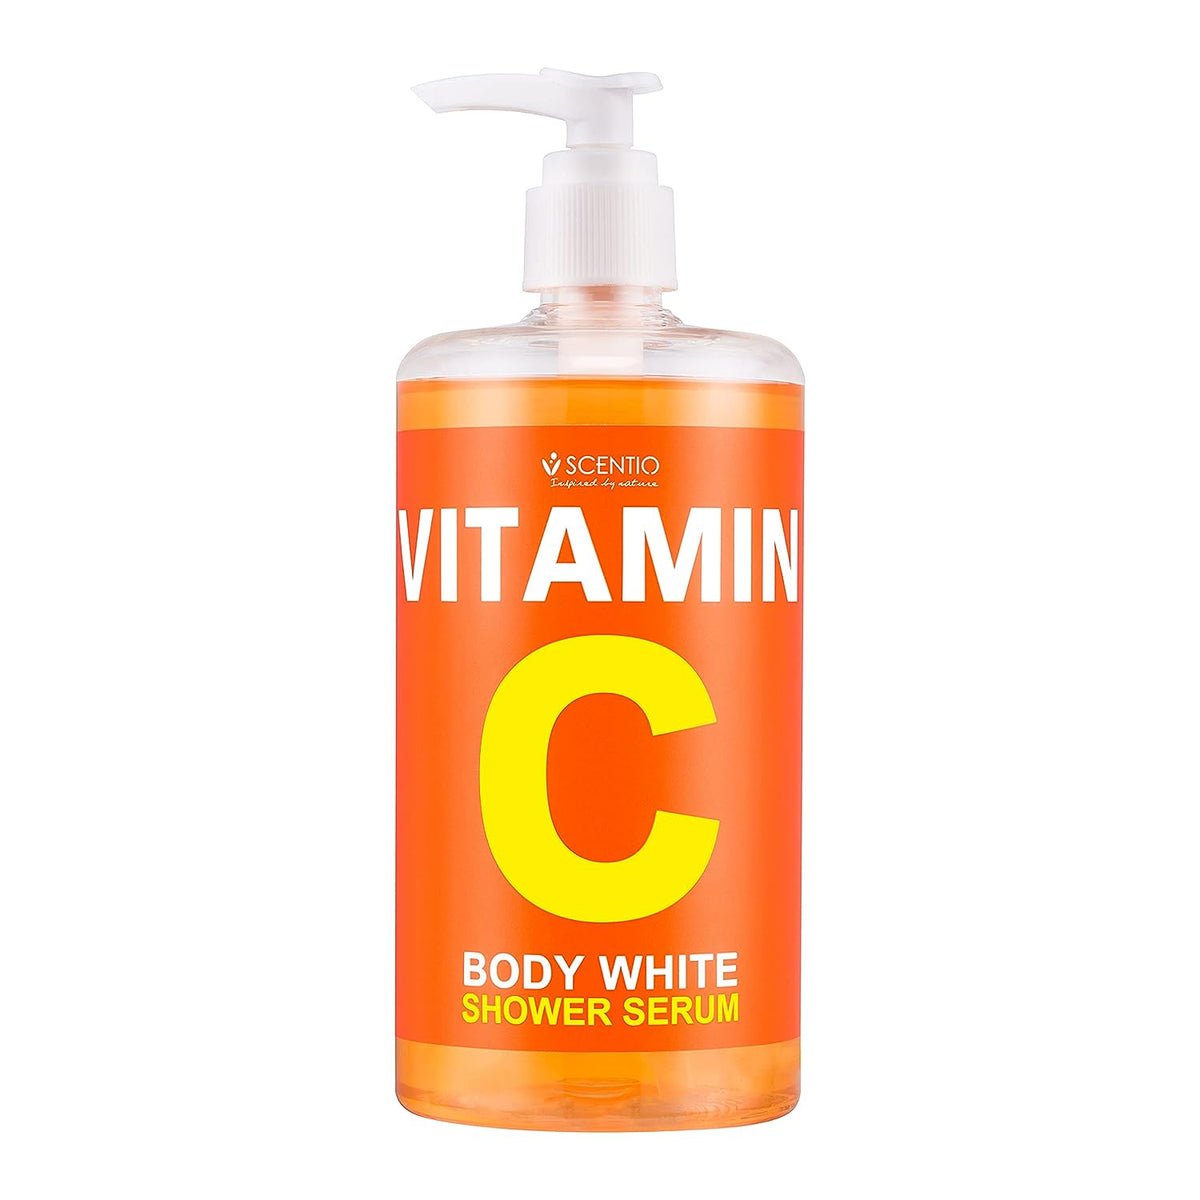 Scentio Vitamin C Body White Shower Serum (450 ml) Beautiful